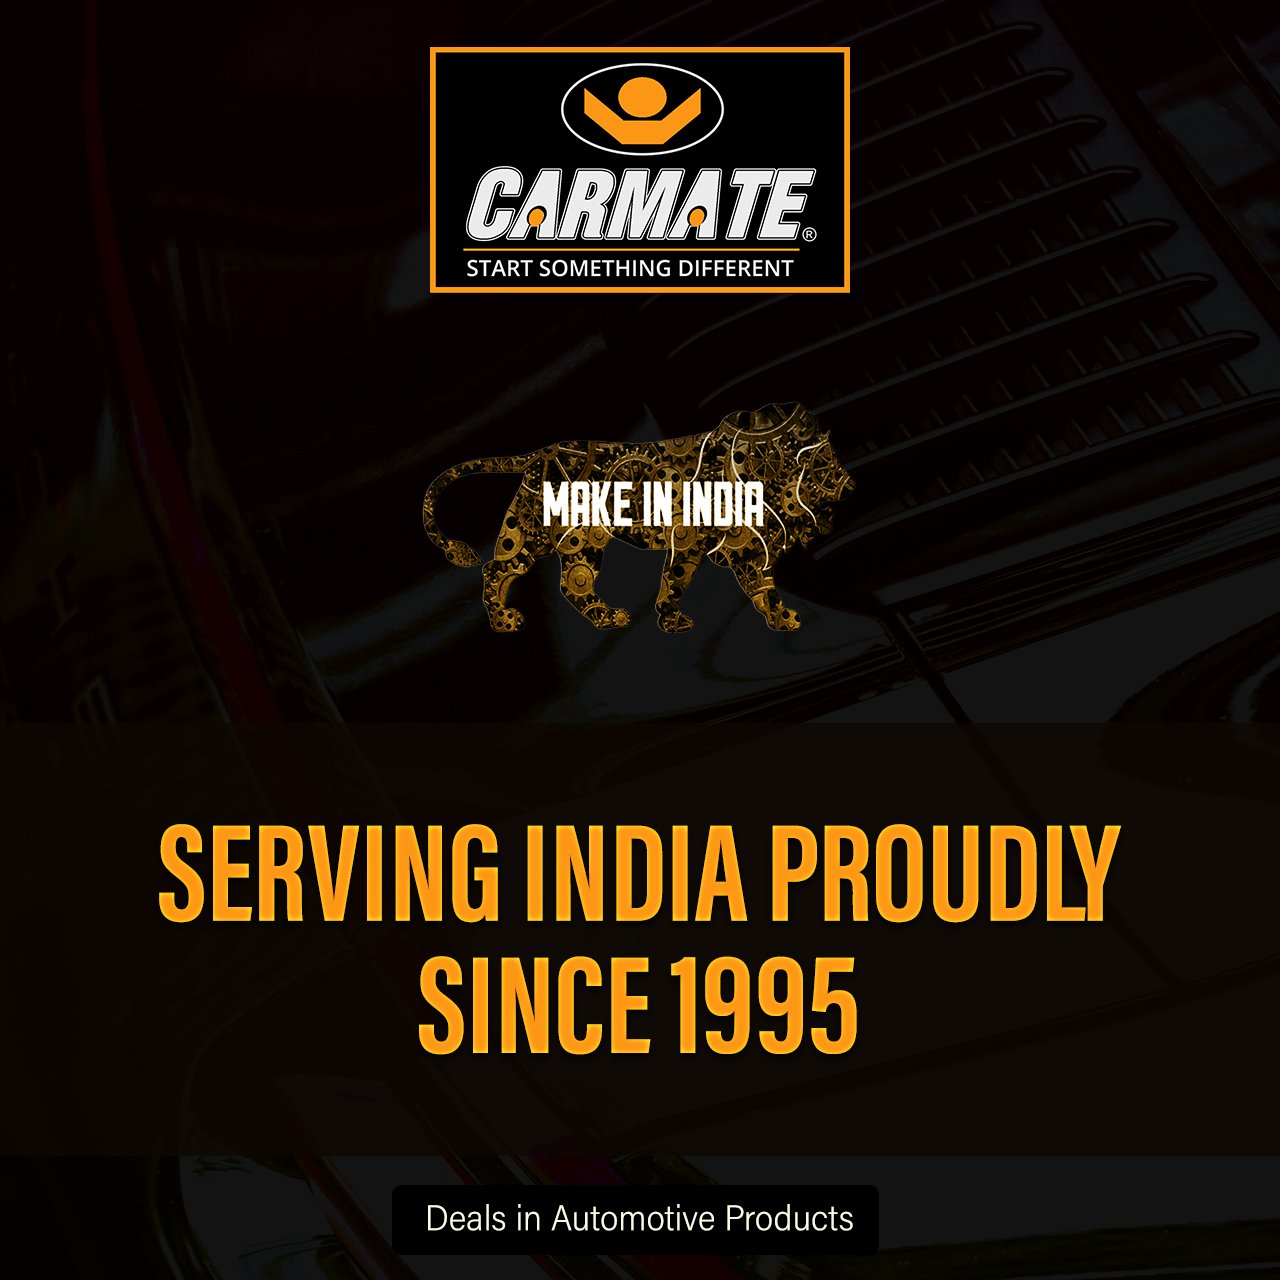 Carmate Car Steering Cover Ring Type Sporty Grip (Black and Tan) For Maruti - Ertiga 2018 (Medium) - CARMATE®